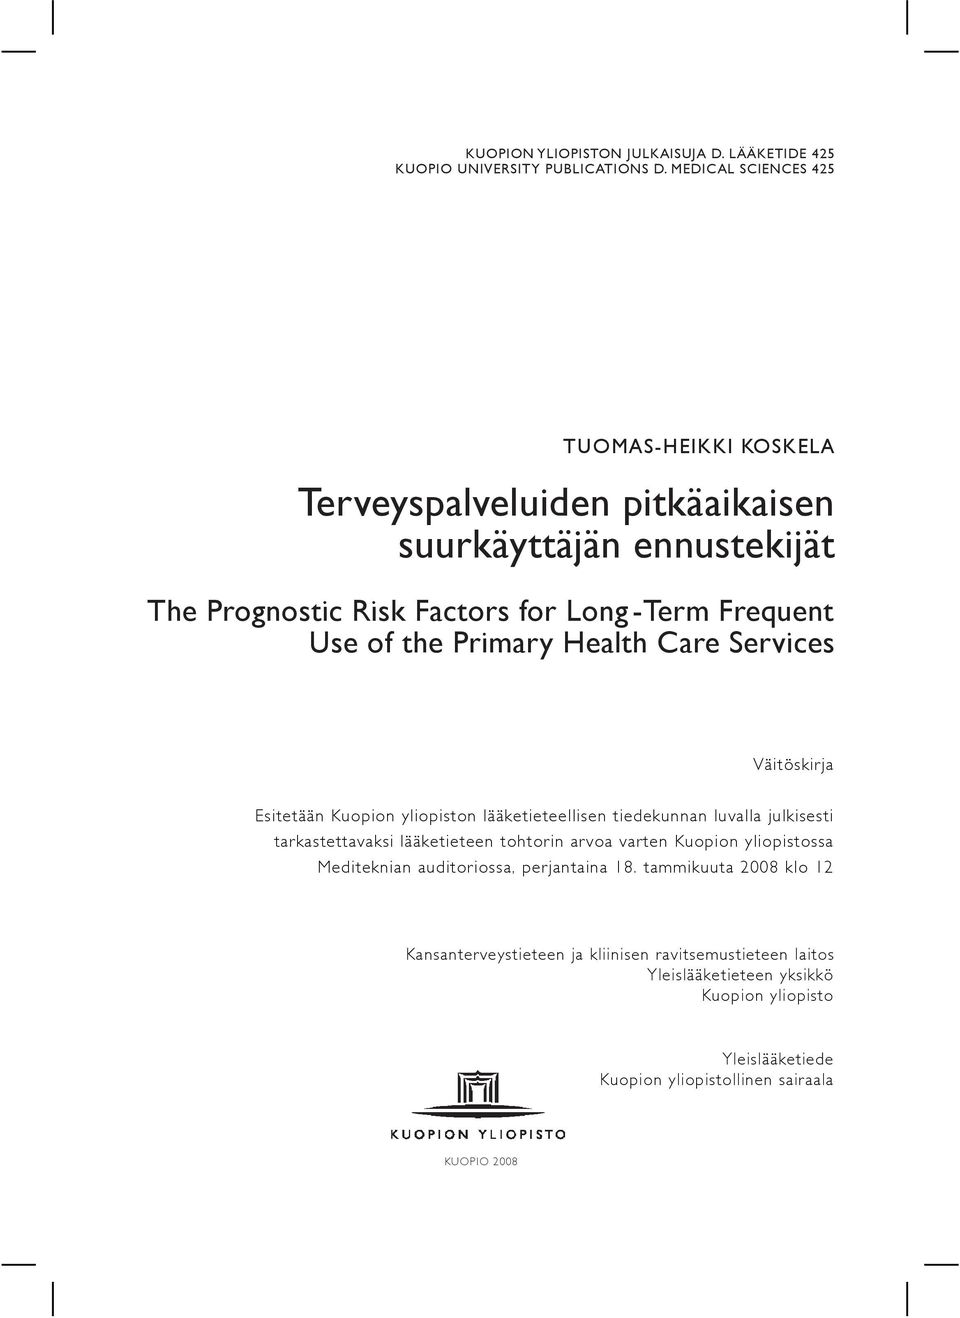 Primary Health Care Services Väitöskirja Esitetään Kuopion yliopiston lääketieteellisen tiedekunnan luvalla julkisesti tarkastettavaksi lääketieteen tohtorin arvoa